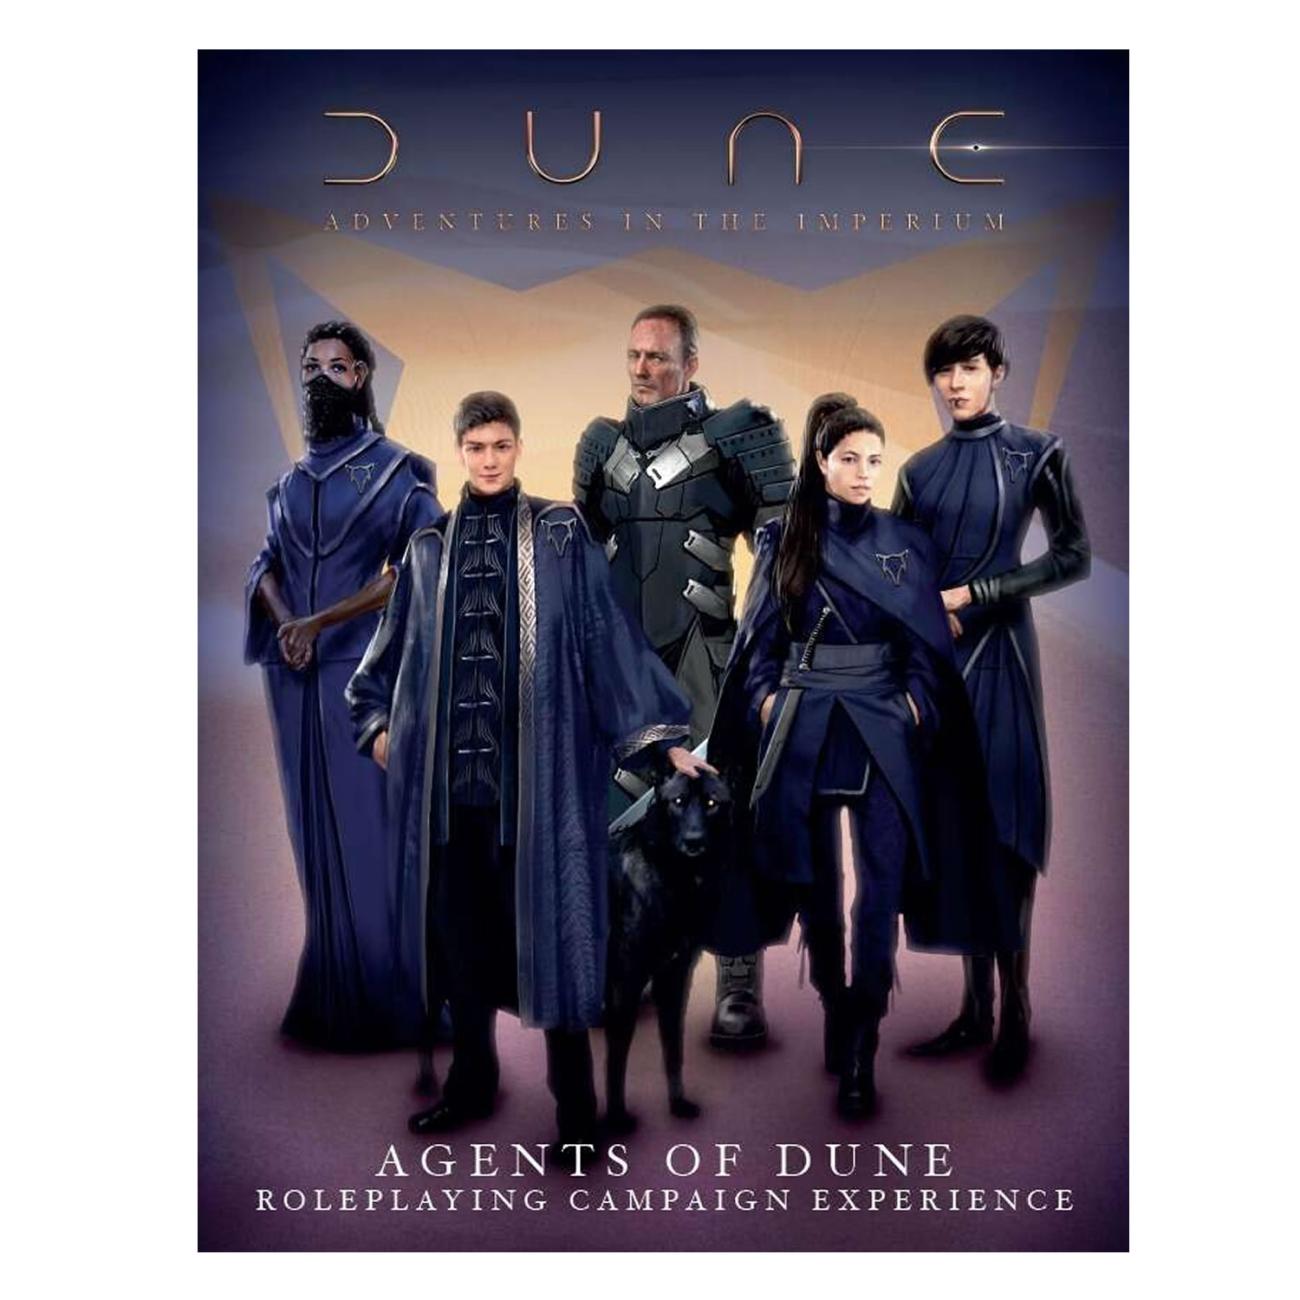 Dune Adventures in the Imperium Agents of Dune Boxset